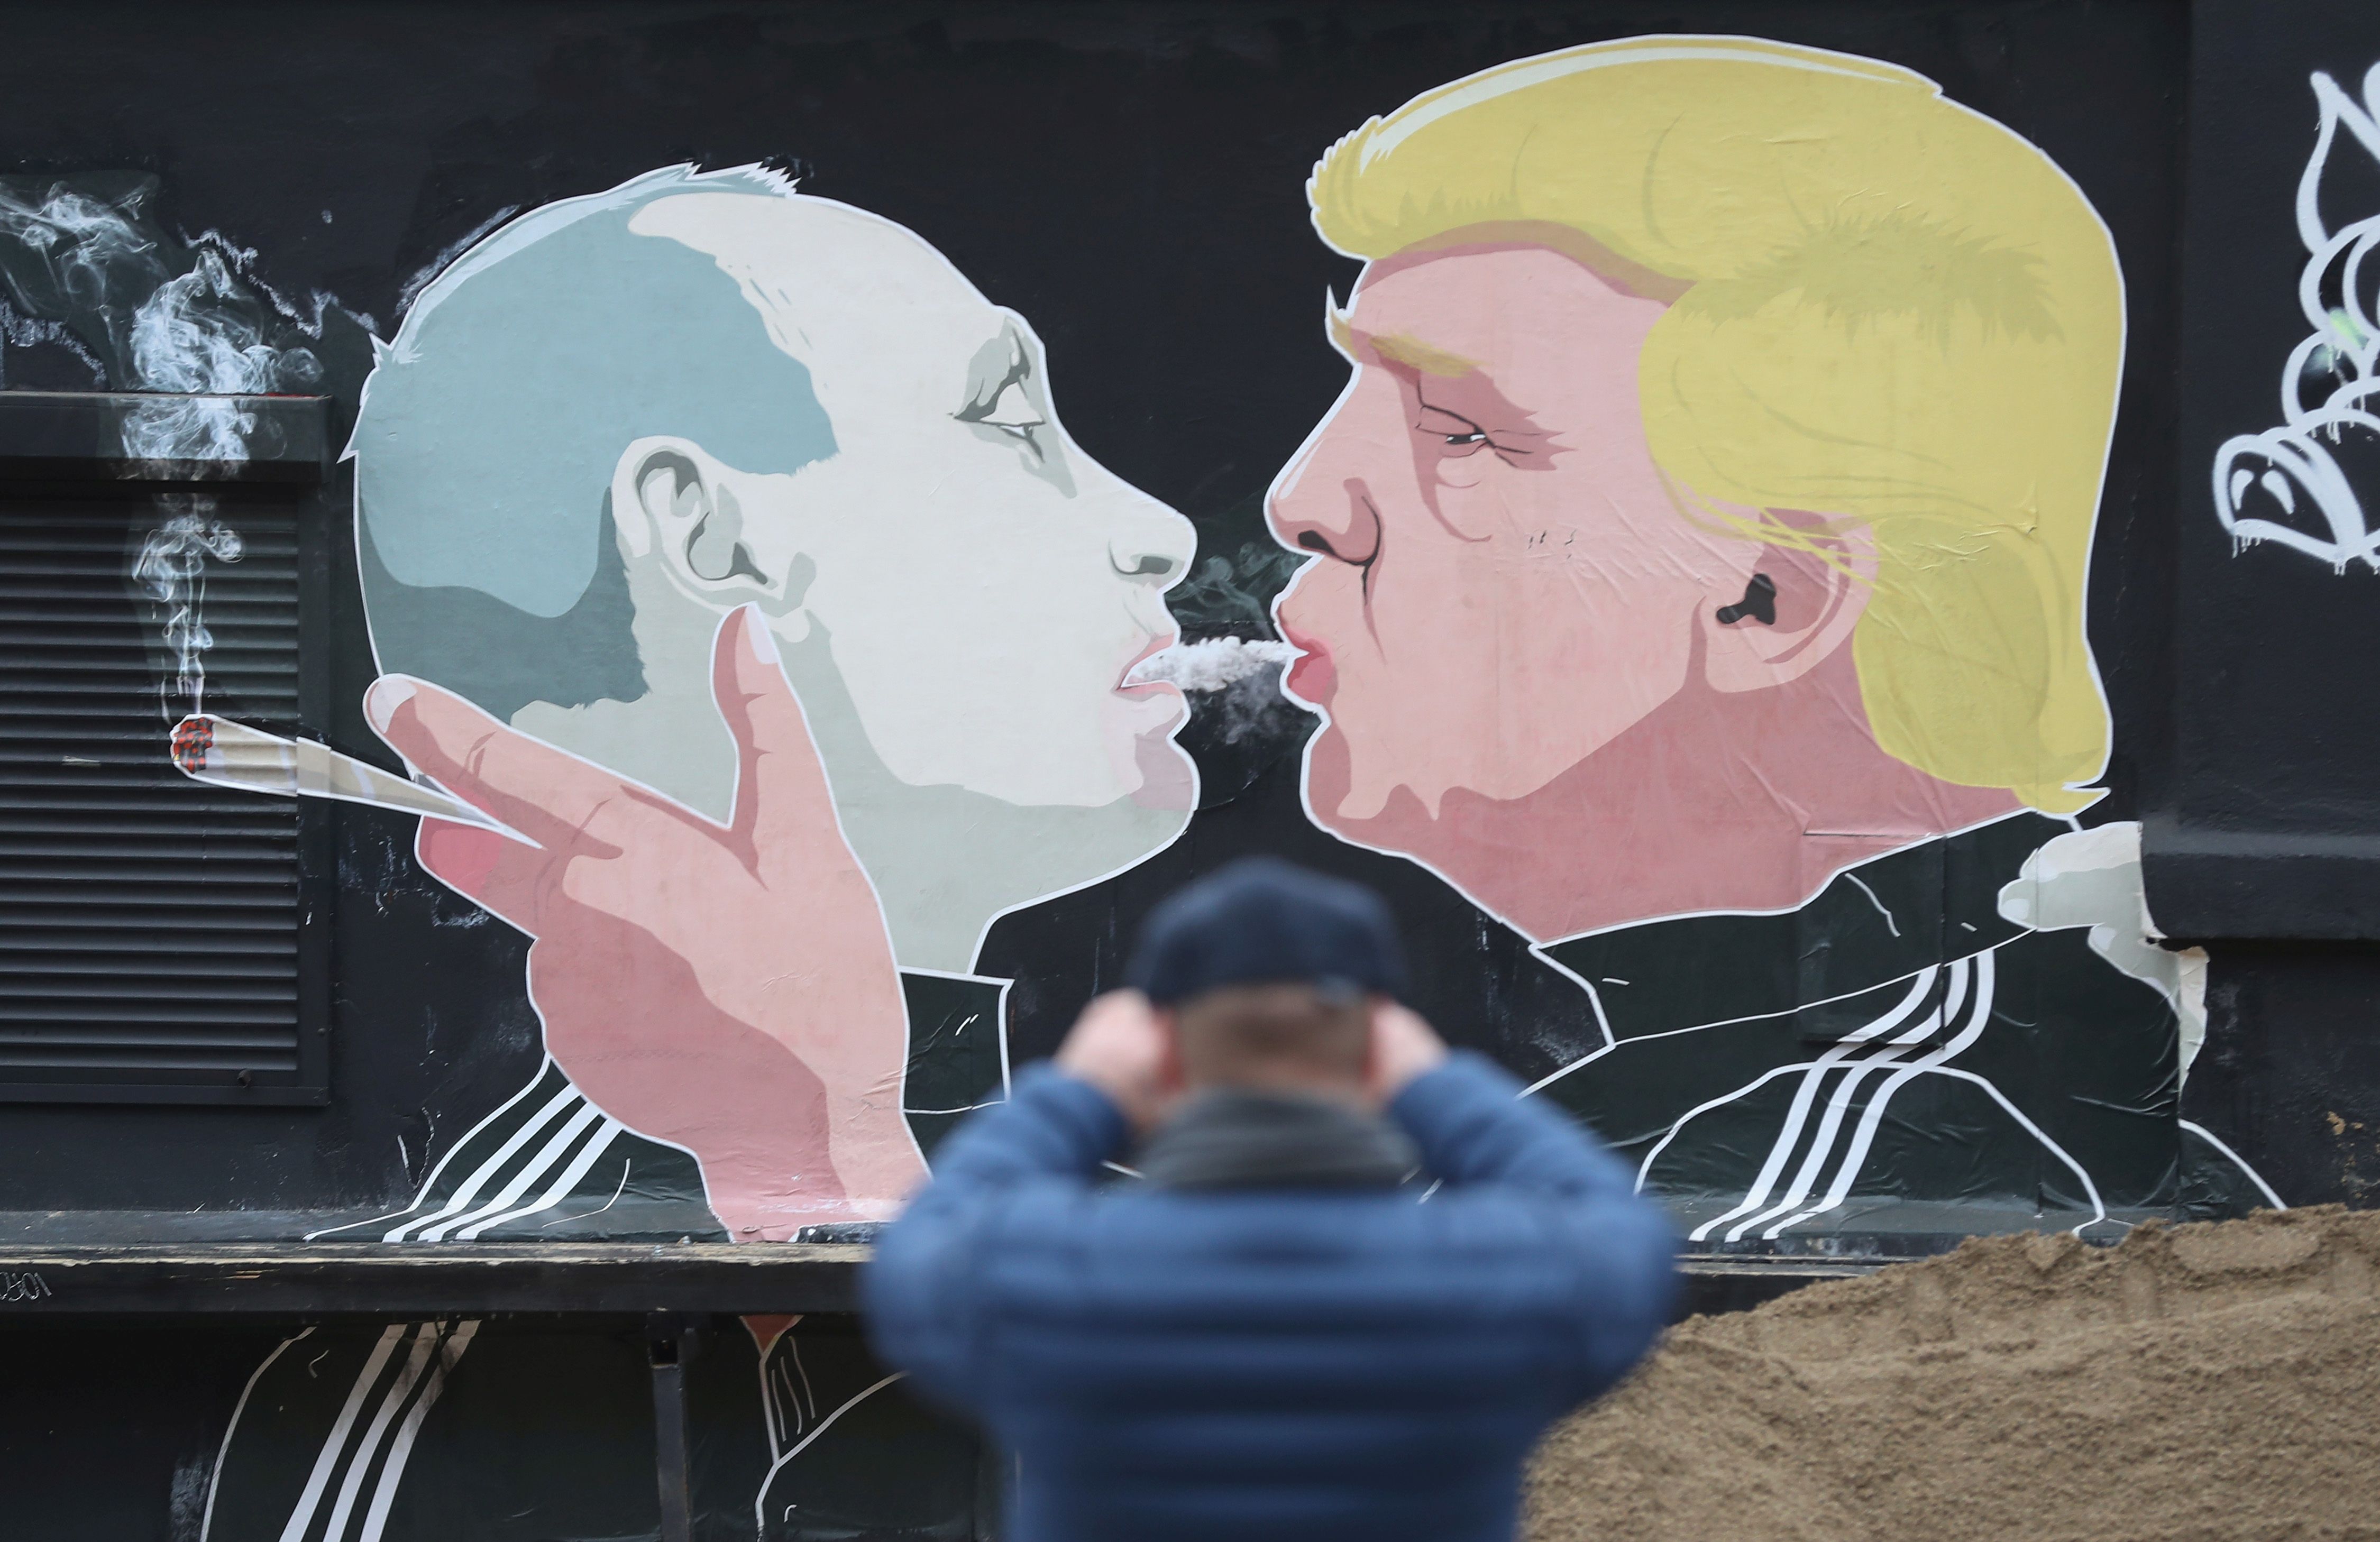 Az észt hírszerzés állítólag lehallgatott egy találkozót a Trump-stáb és egy Putyin-közeli orosz politikus között